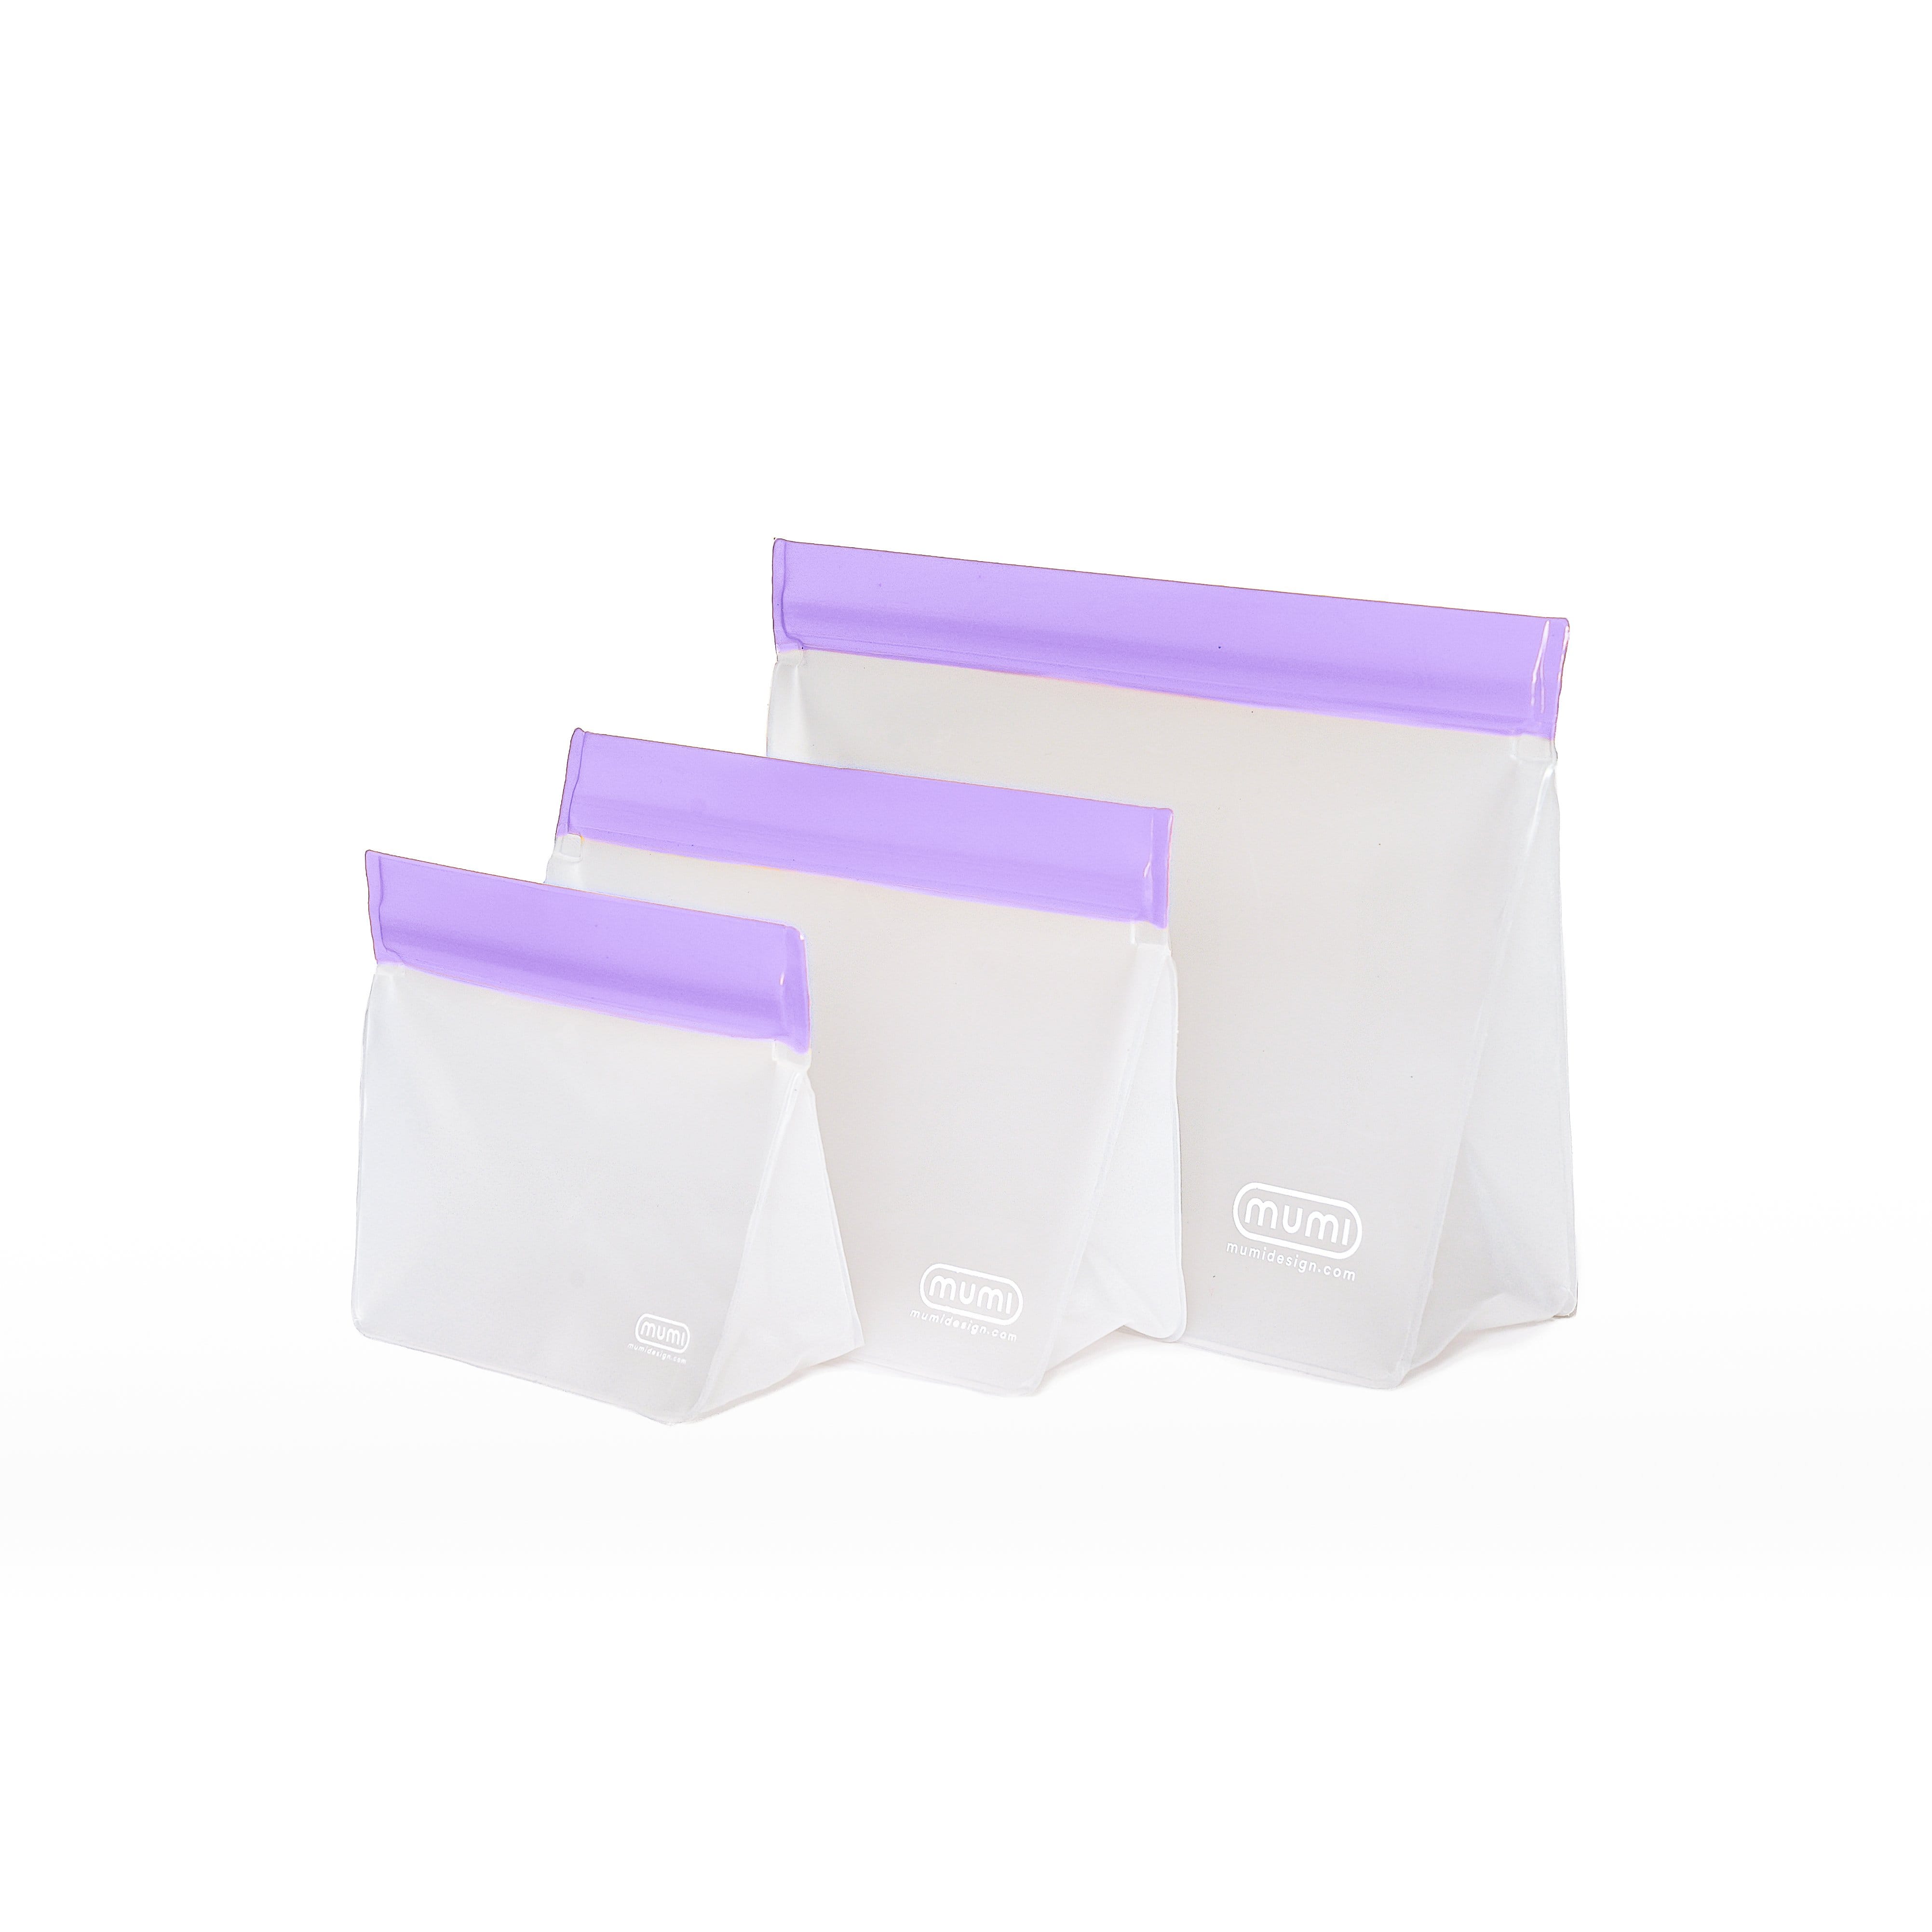 mumi purple reusable zip up bags